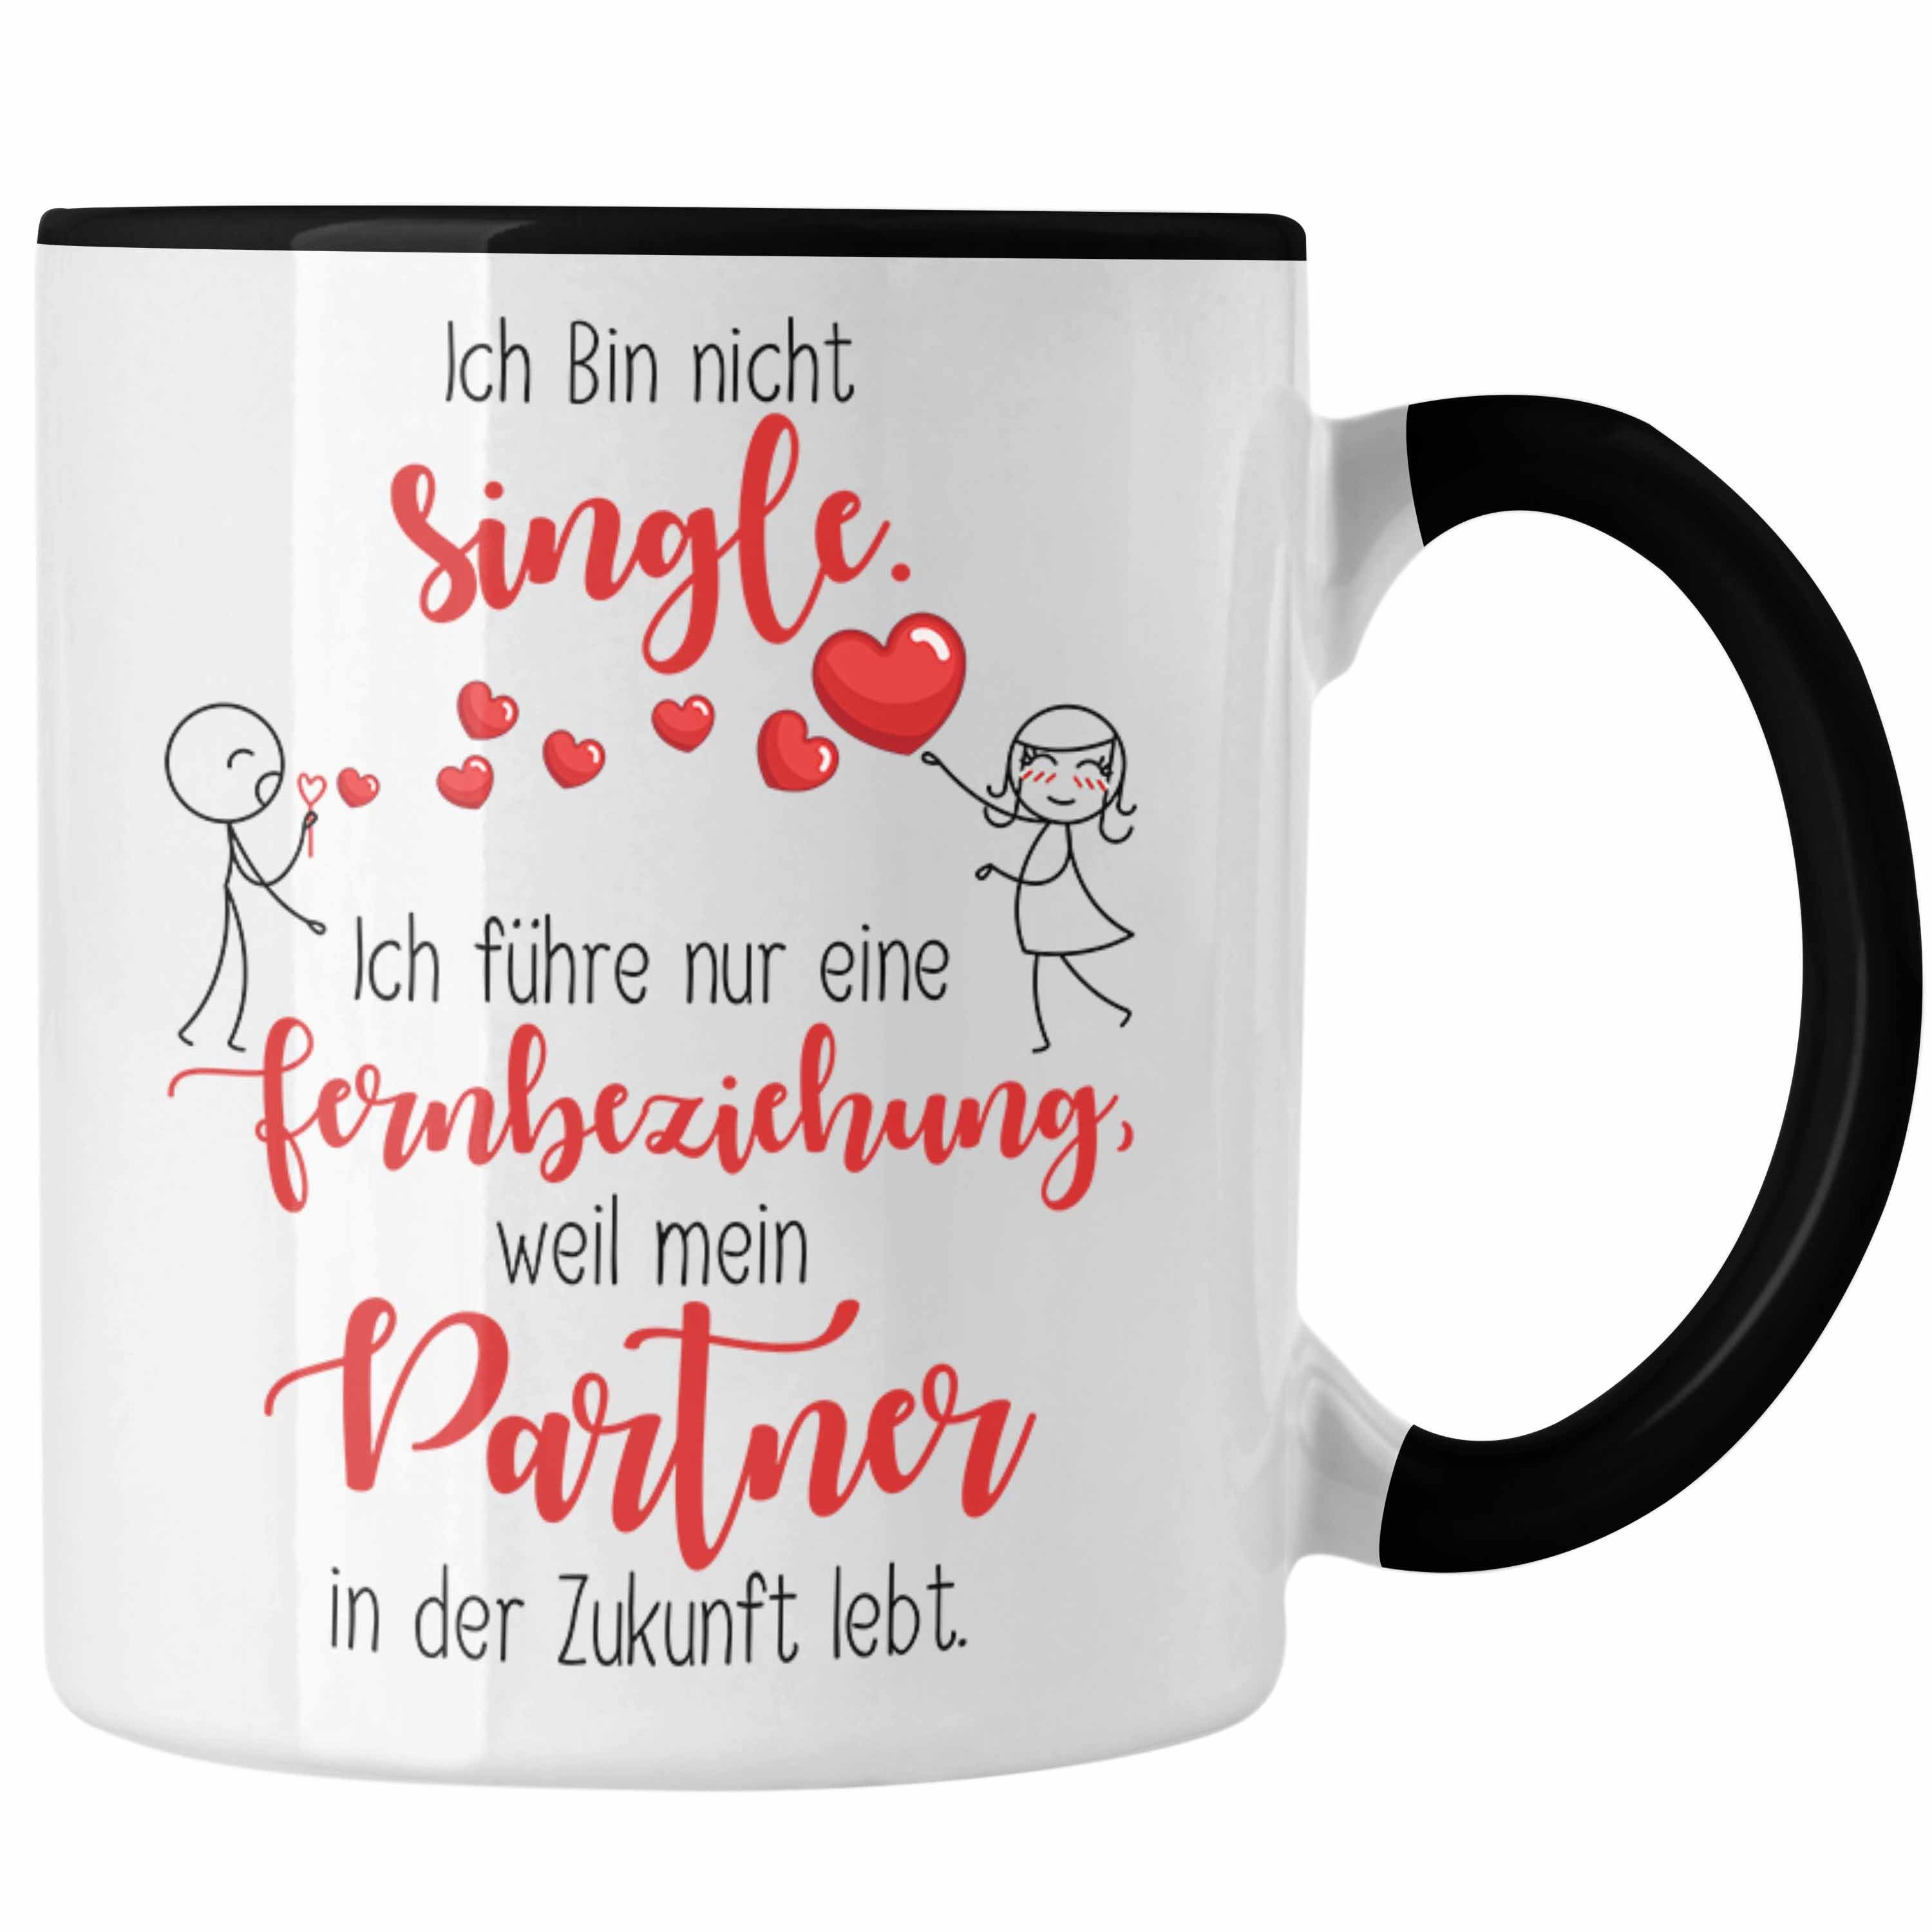 Trendation Tasse Single Tasse Geschenk Fernbeziehung mit Partner in der Zukunft Geschen Schwarz